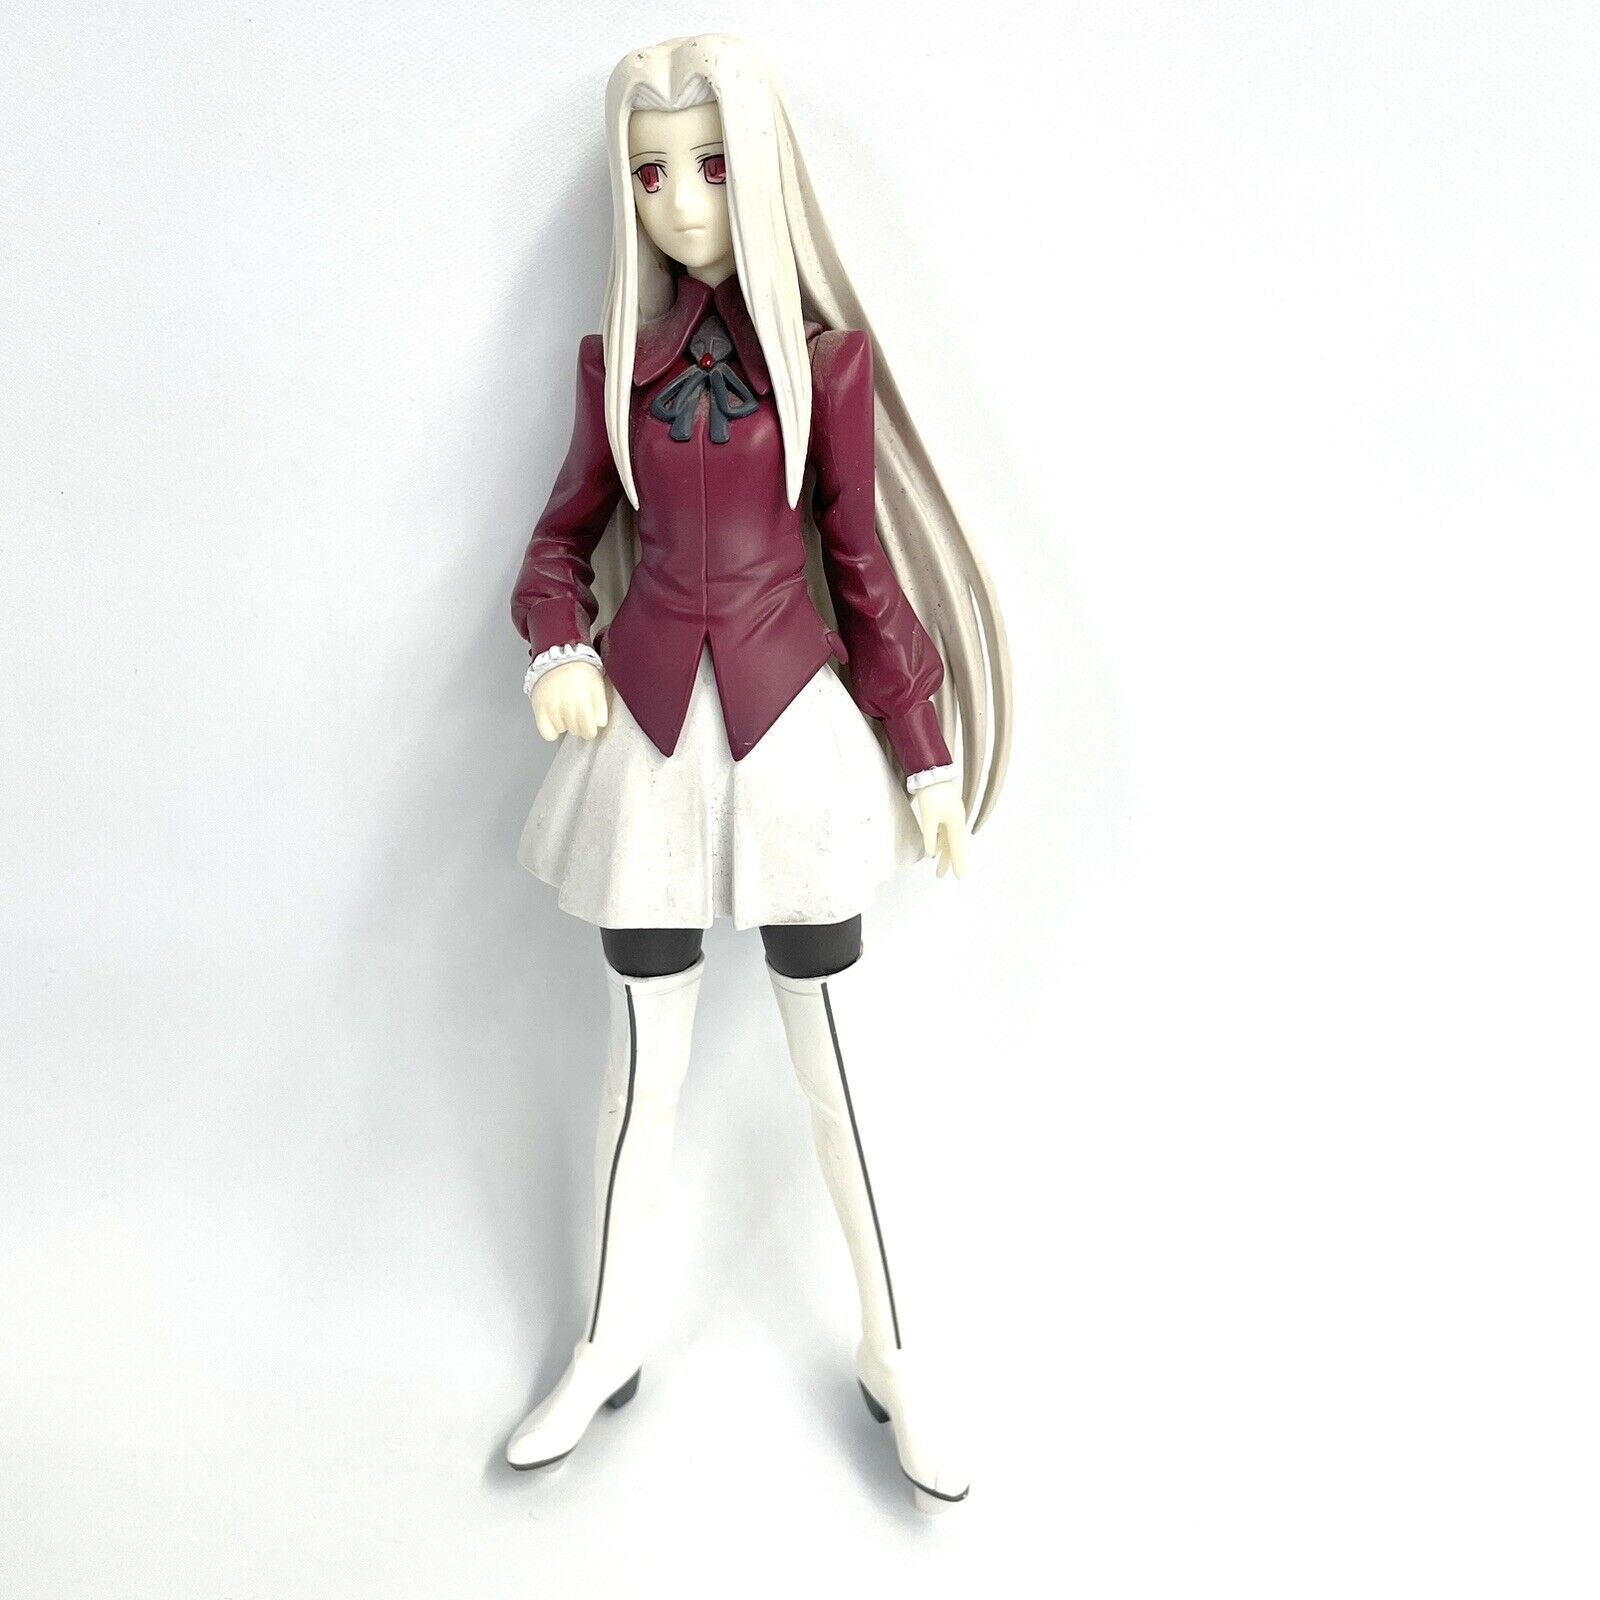 Fate Zero Irisviel von Einzbern DX Figure Anime Toy Collection PVC 7 in